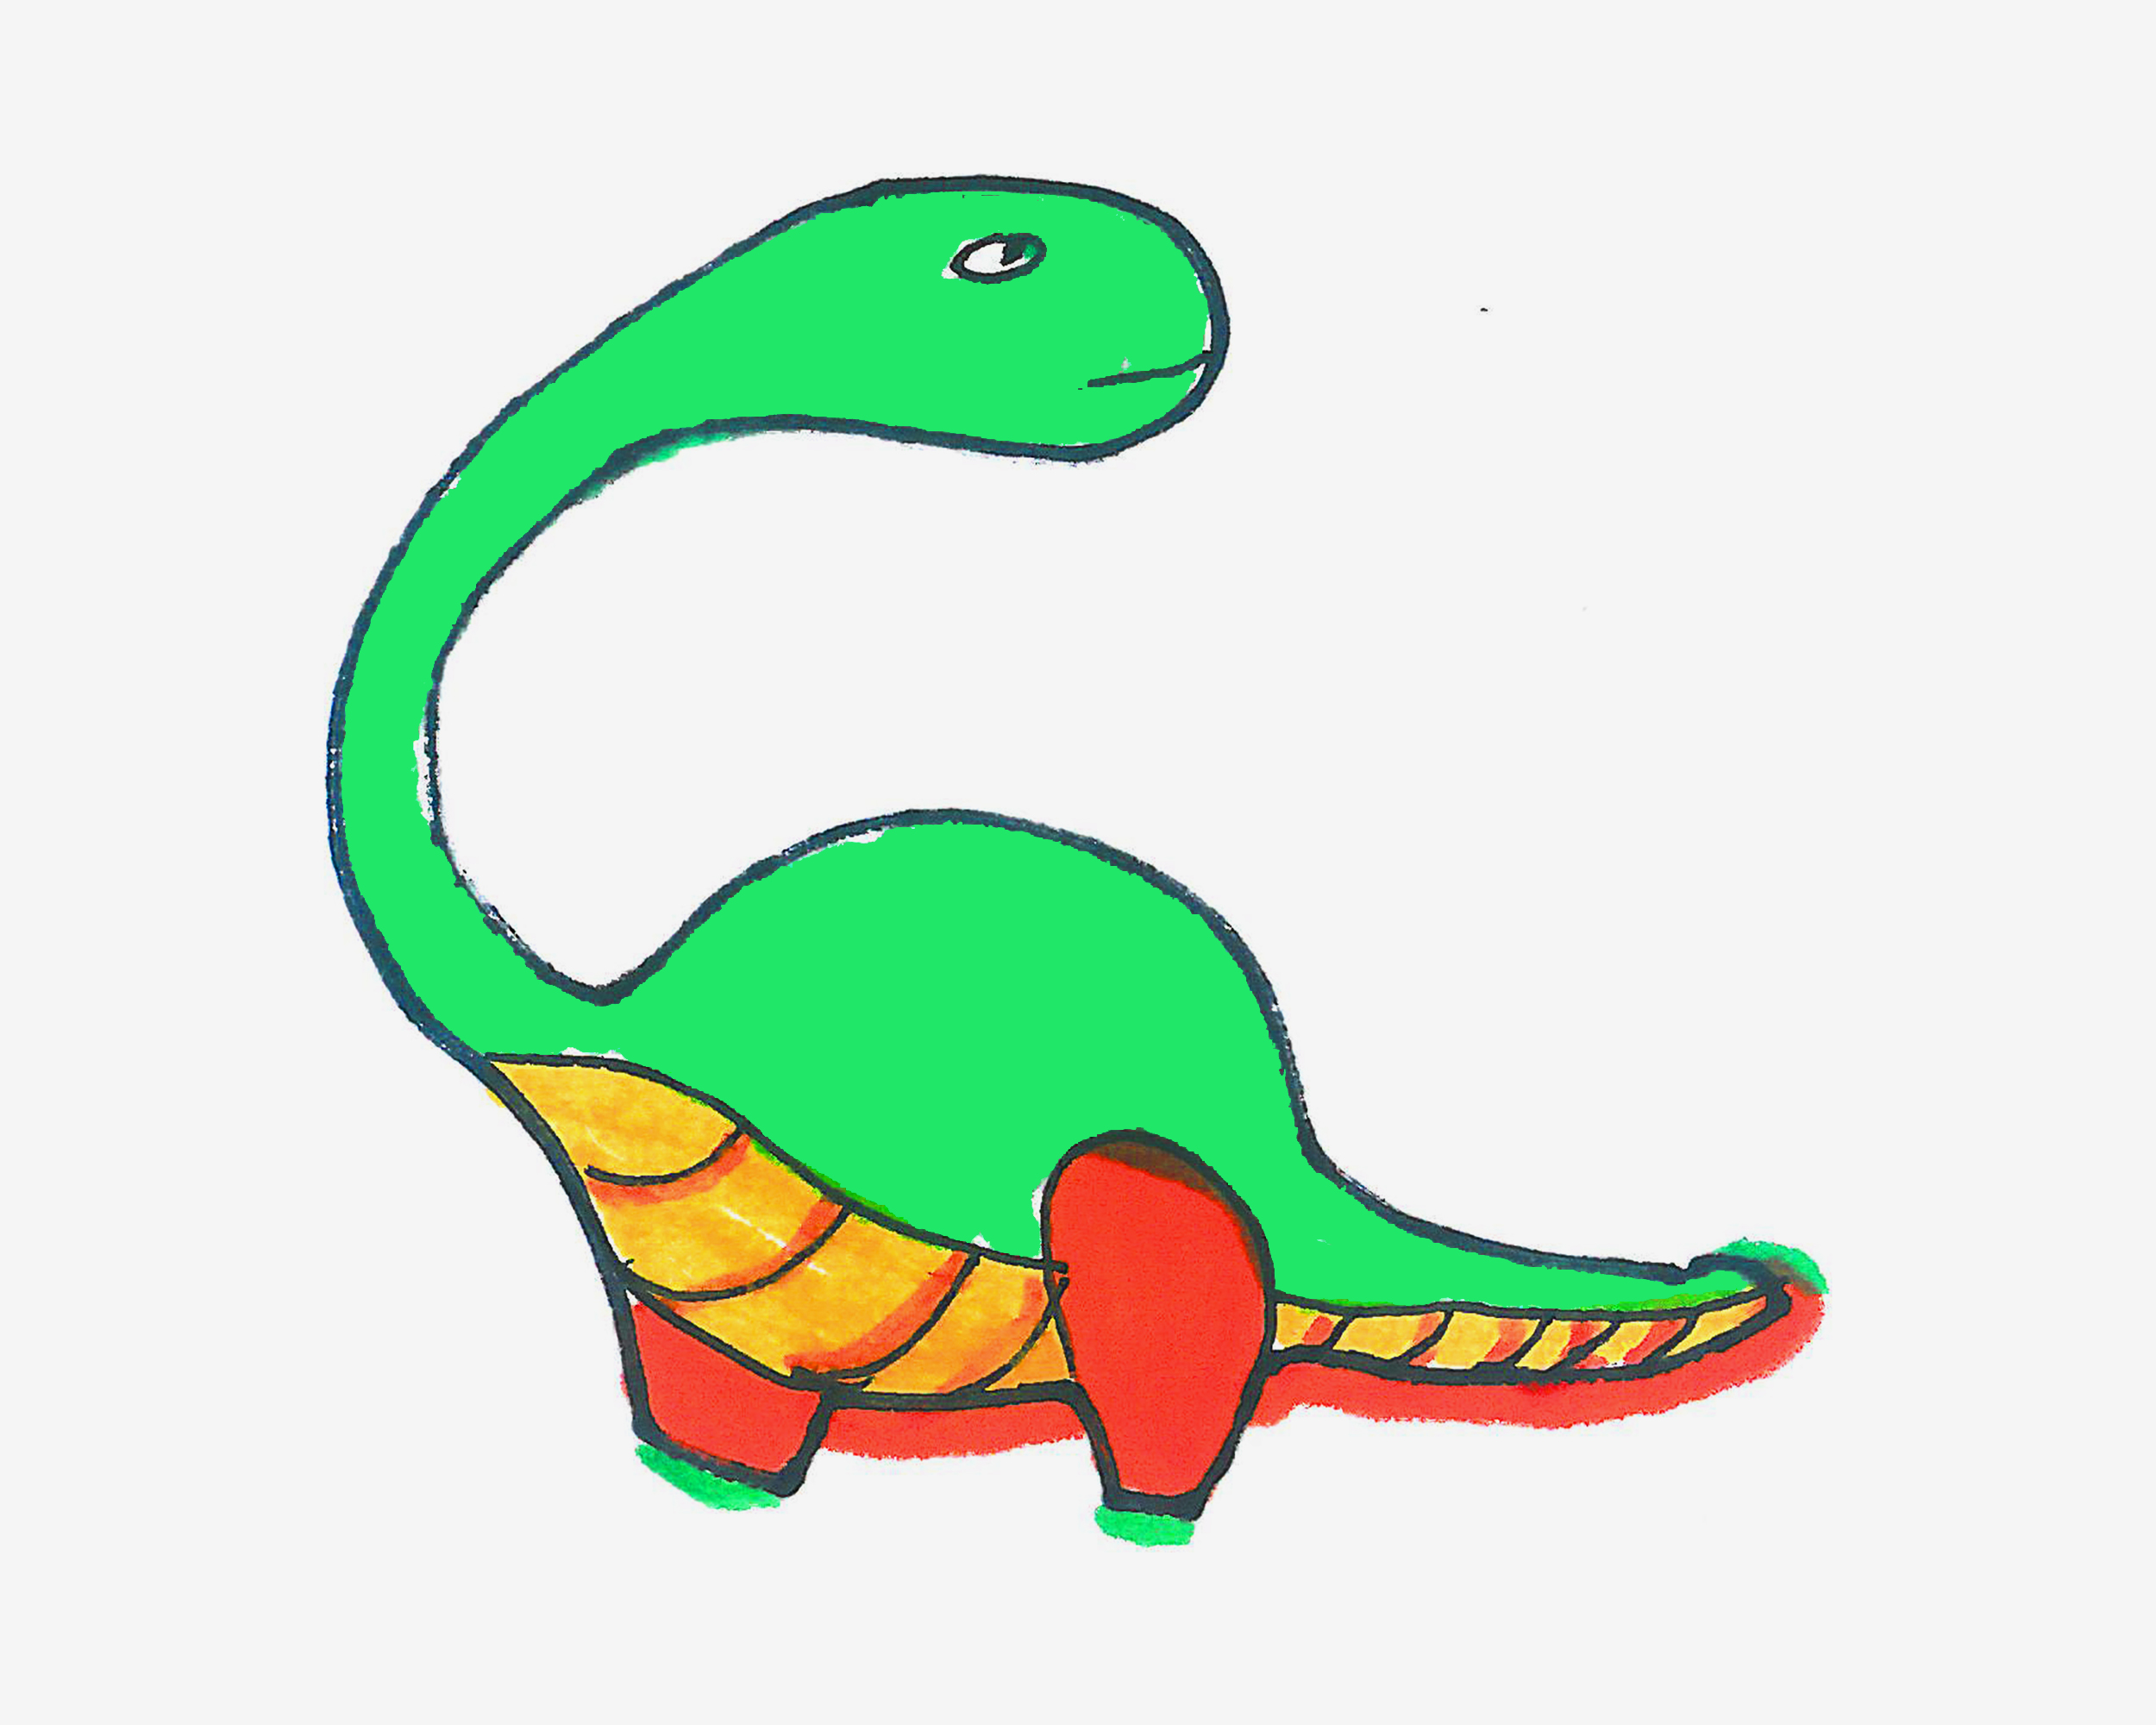 恐龙世界杯蛋糕简笔画怎么画 恐龙生日蛋糕简笔画 - 第 3 - 水彩迷